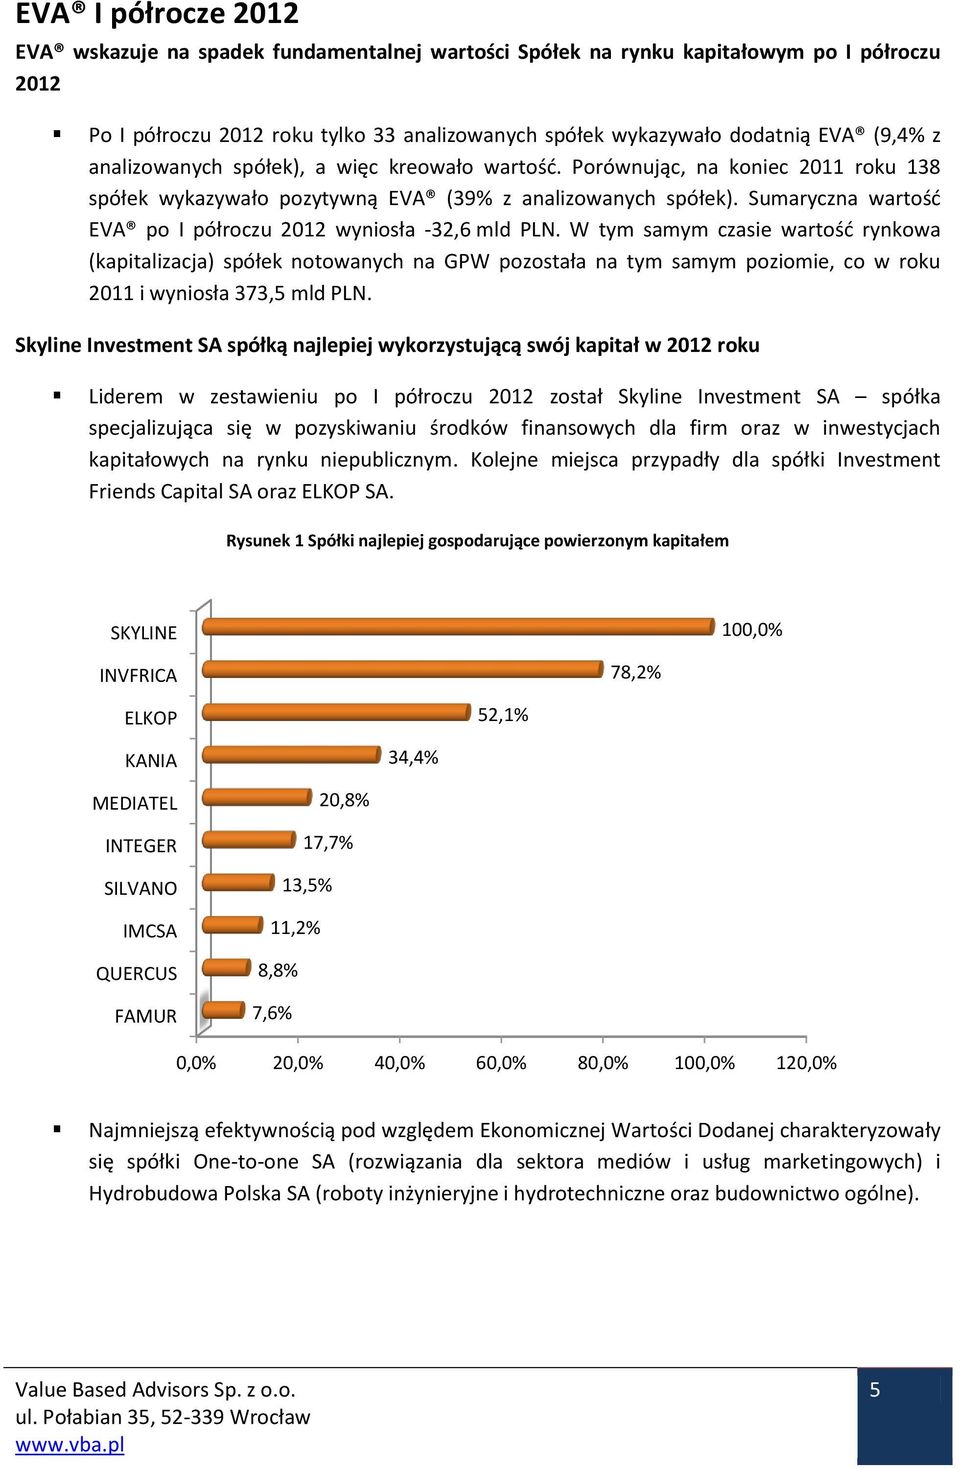 Sumaryczna wartość EVA po I półroczu 2012 wyniosła -32,6 mld PLN.